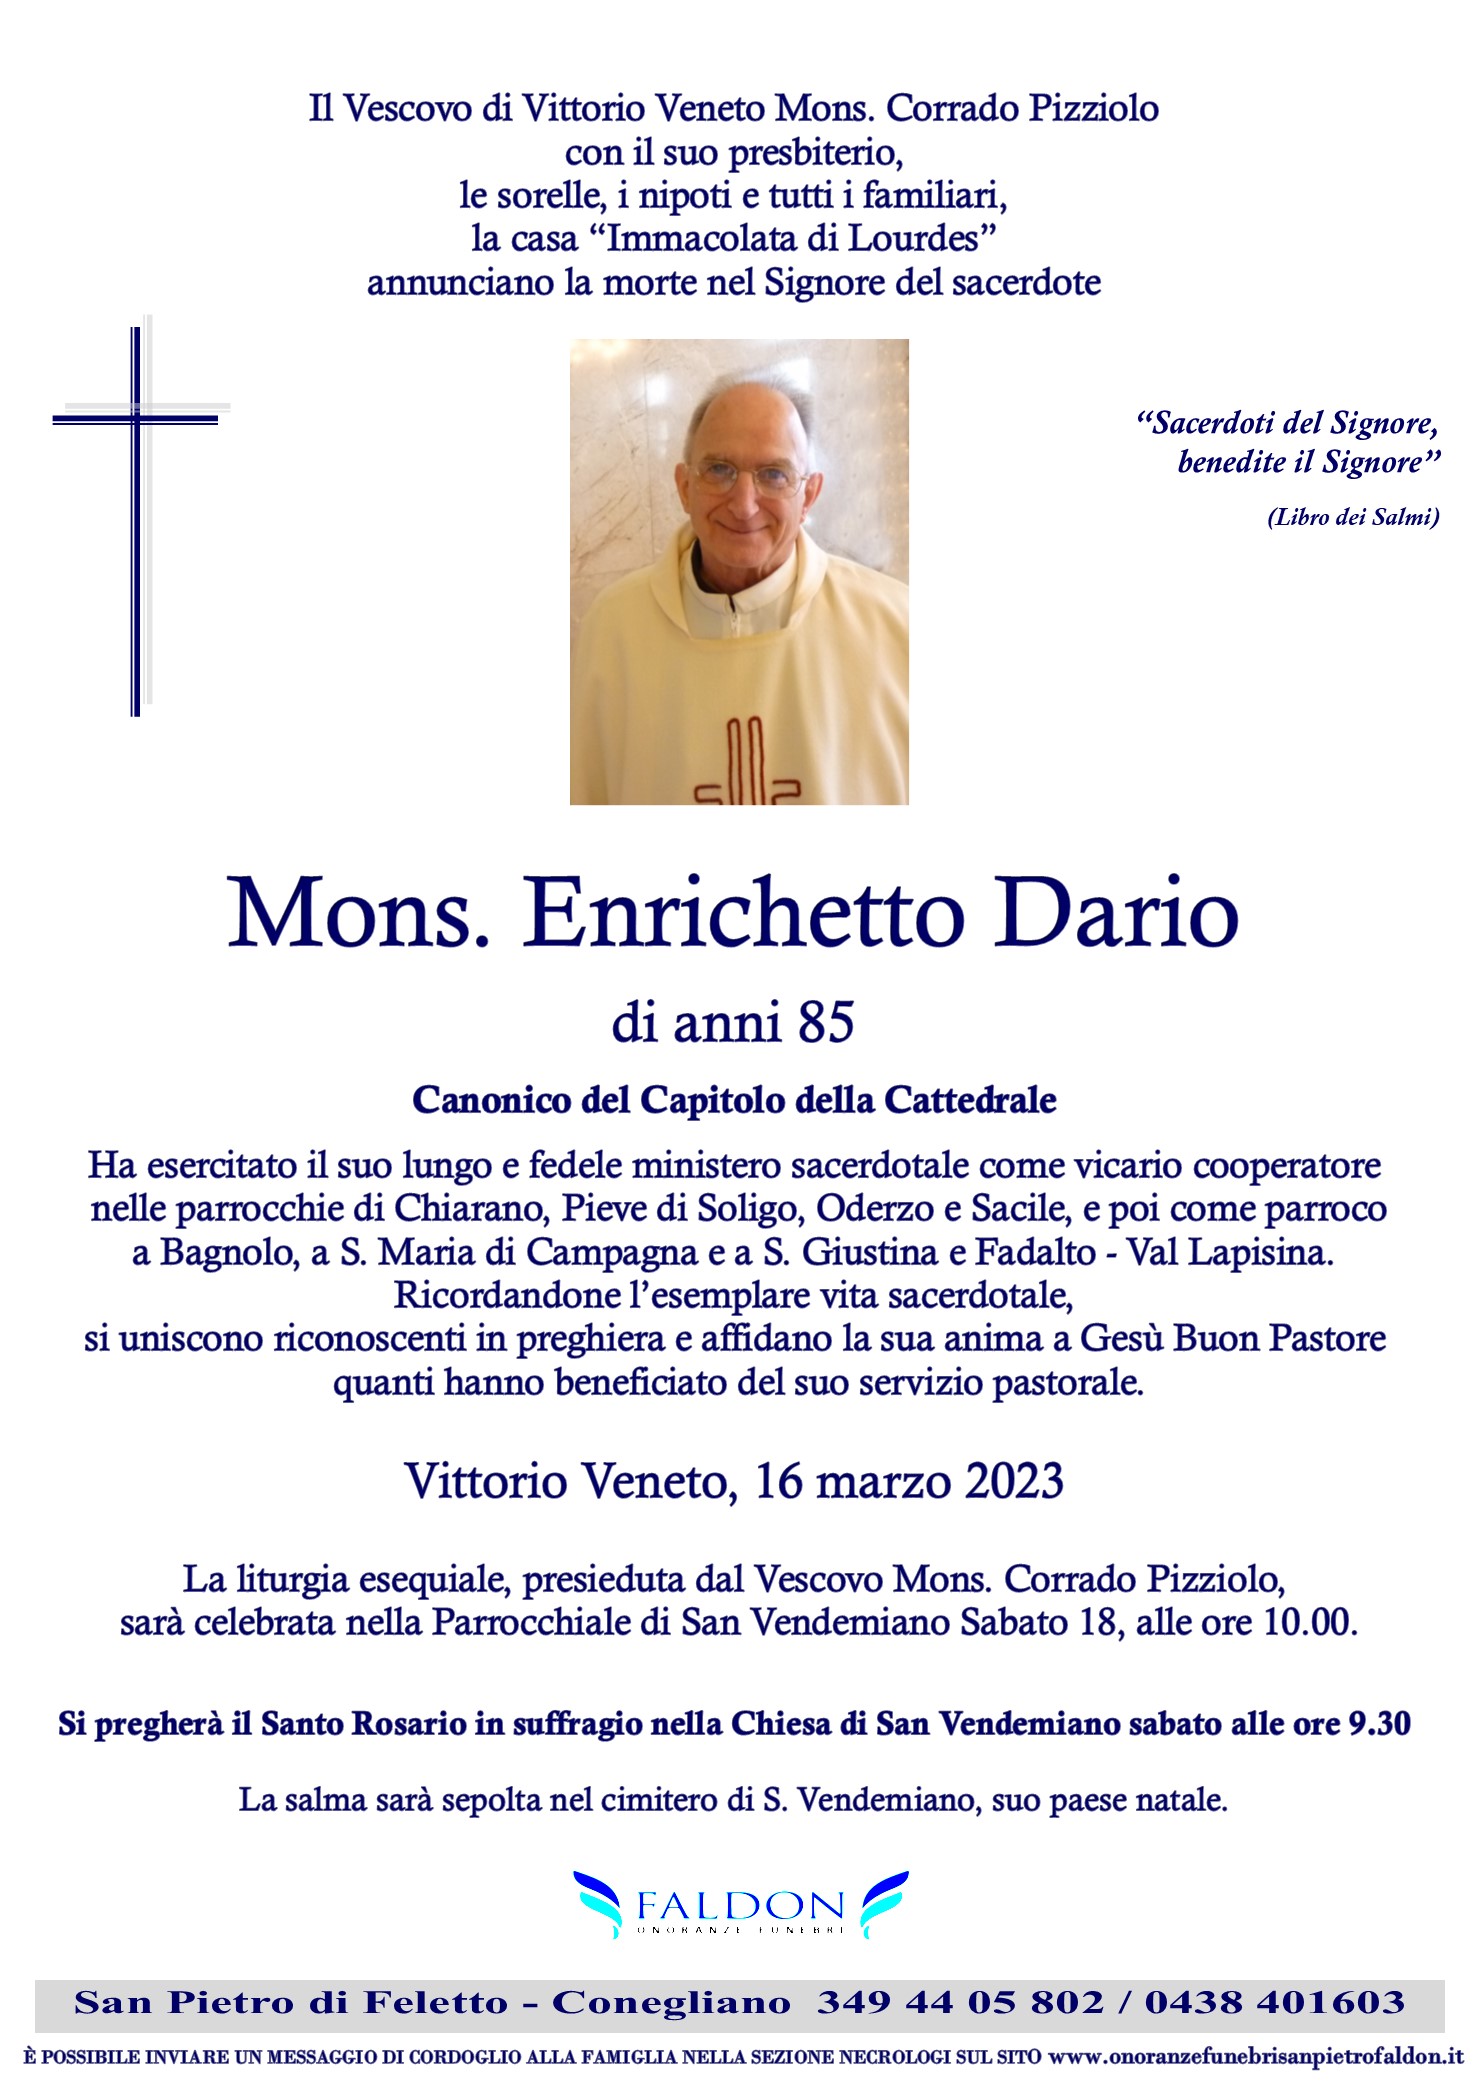 Mons. Dario Enrichetto